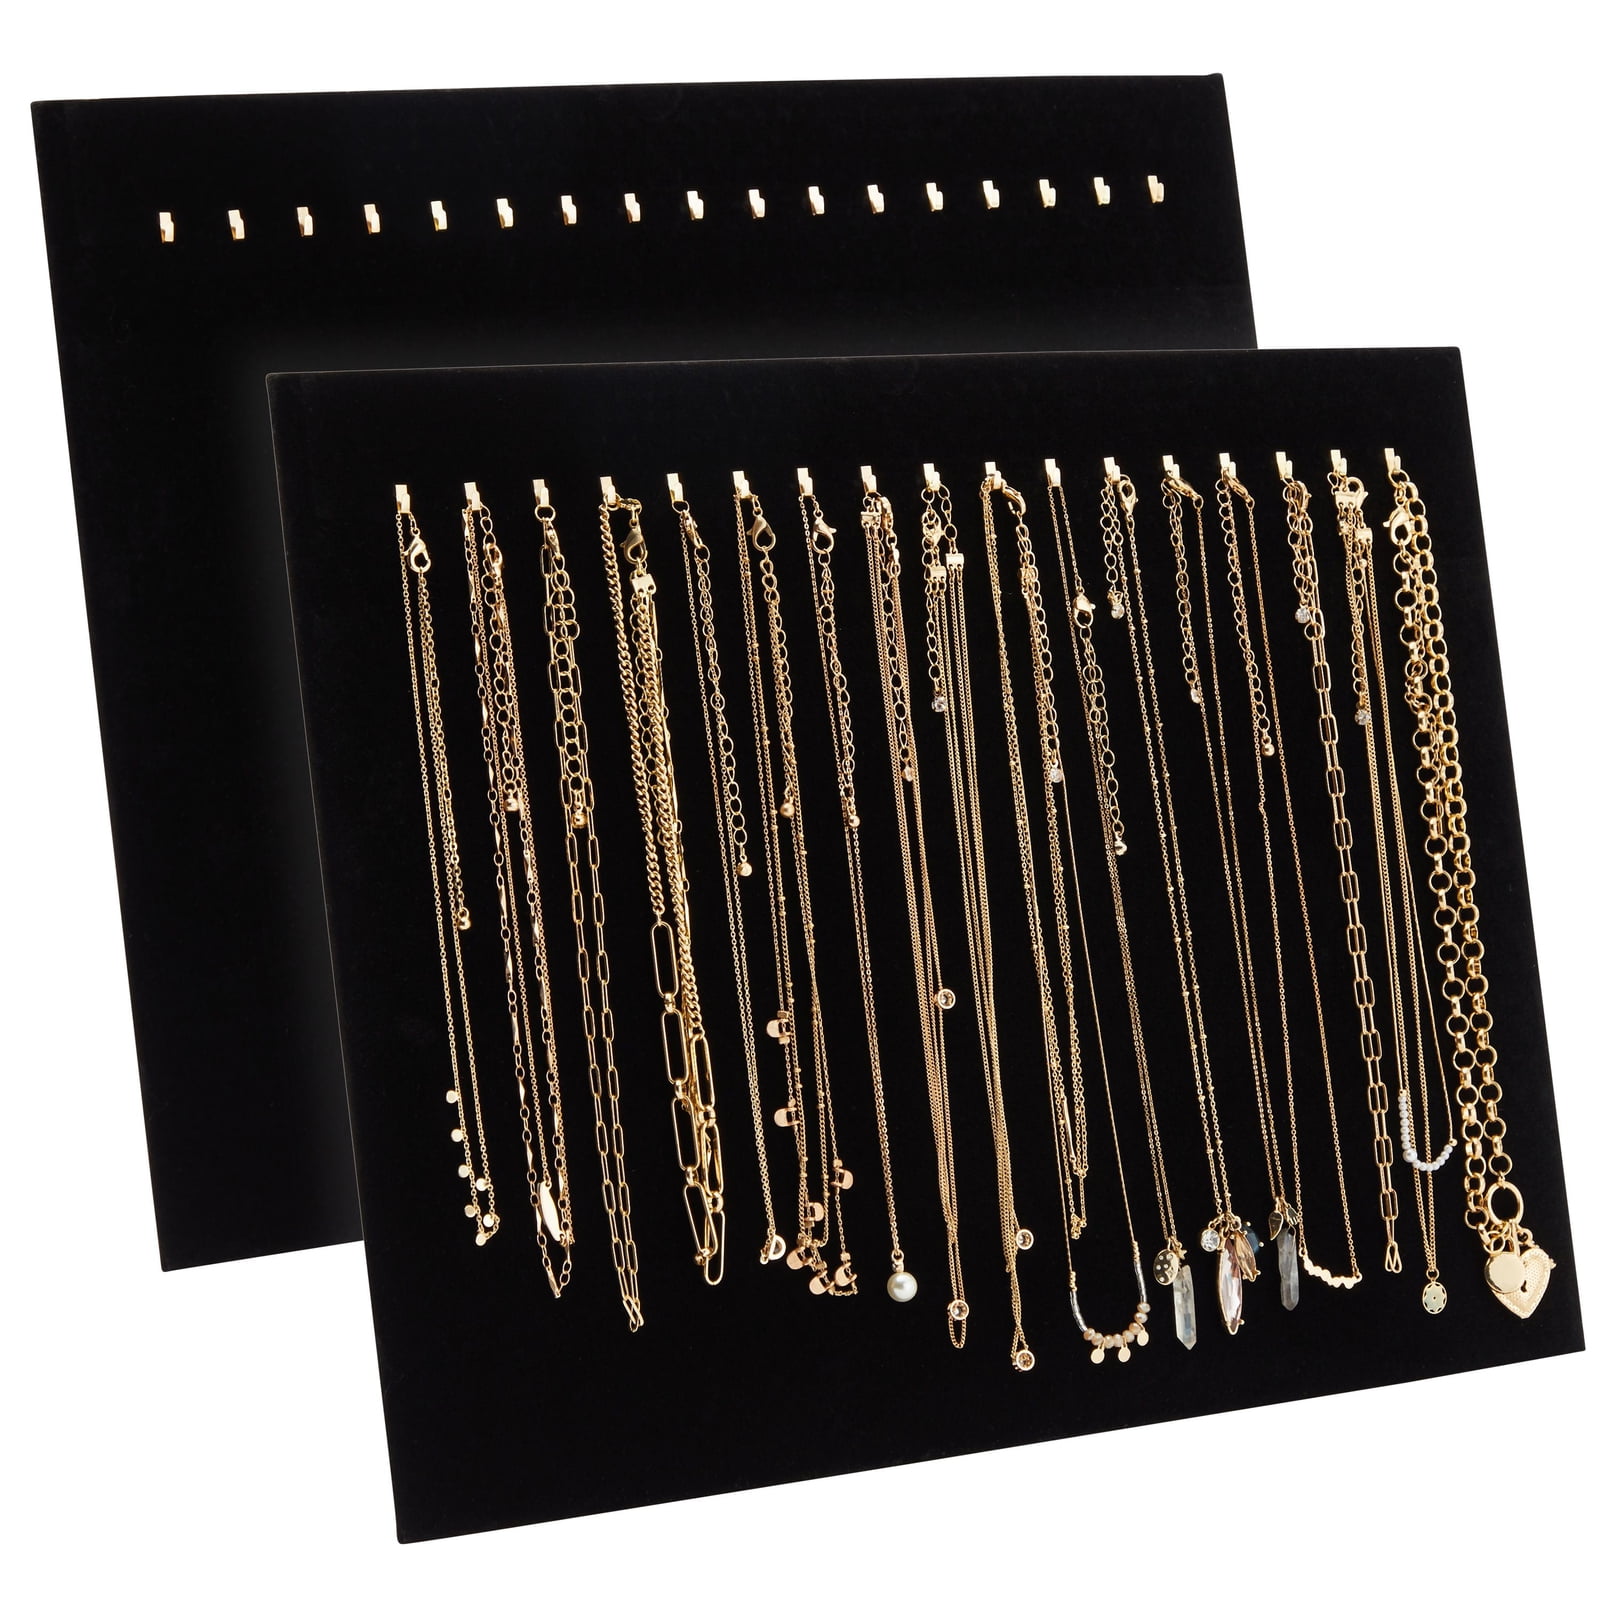 2 Black Velvet Jewelry Chain Display Pad Travel Case 